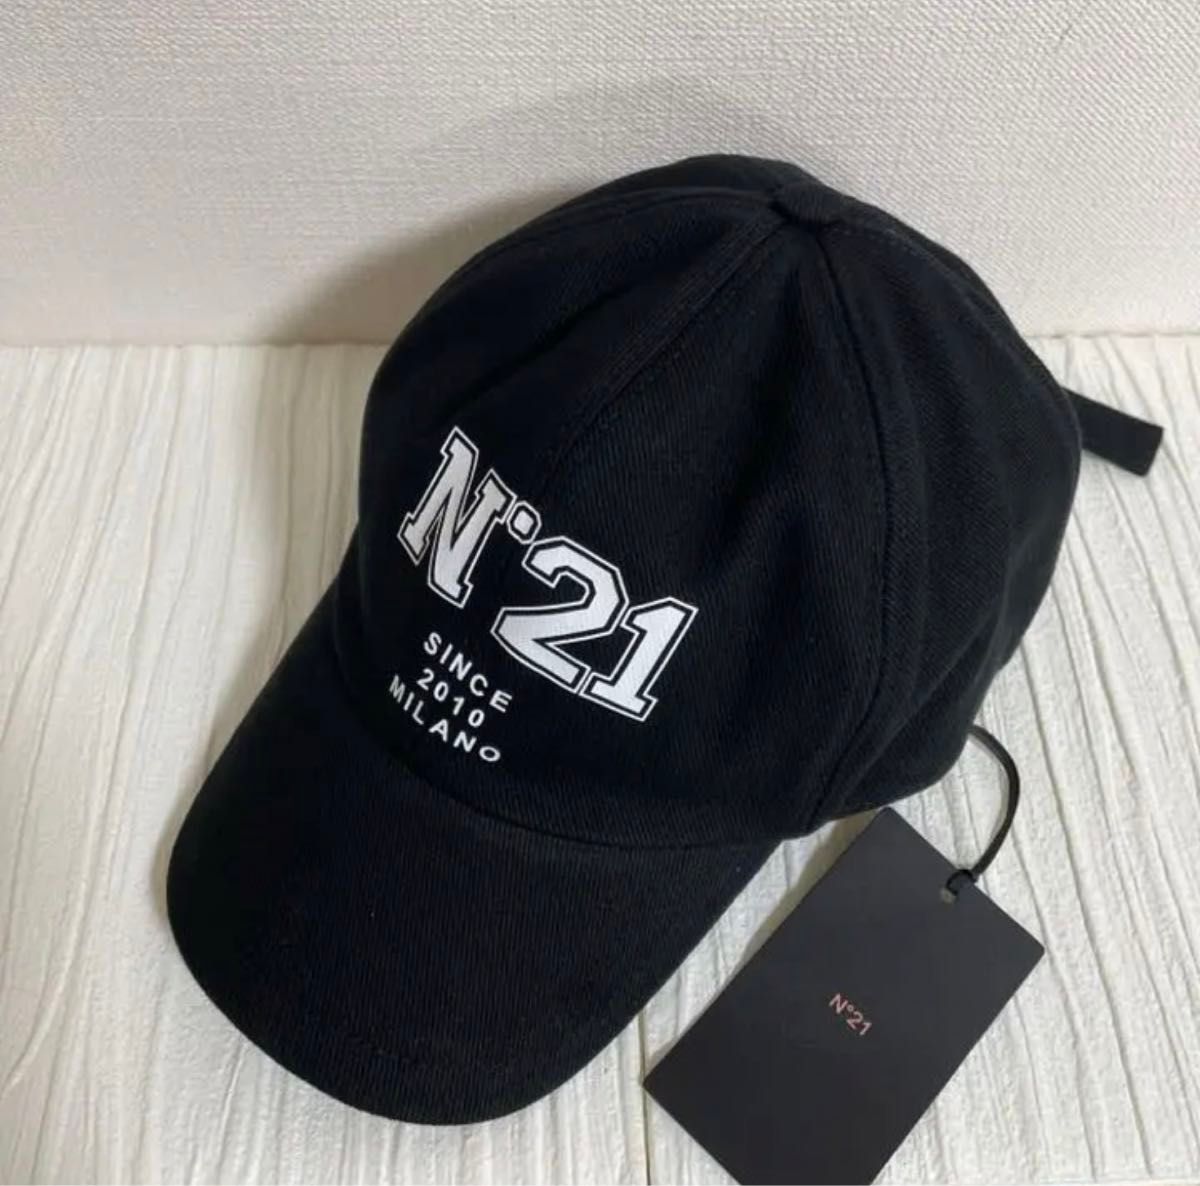 新品 未使用 N°21 キャップ 帽子 ブラック ビックロゴキャップ ヌメロヴェントゥーノ 黒